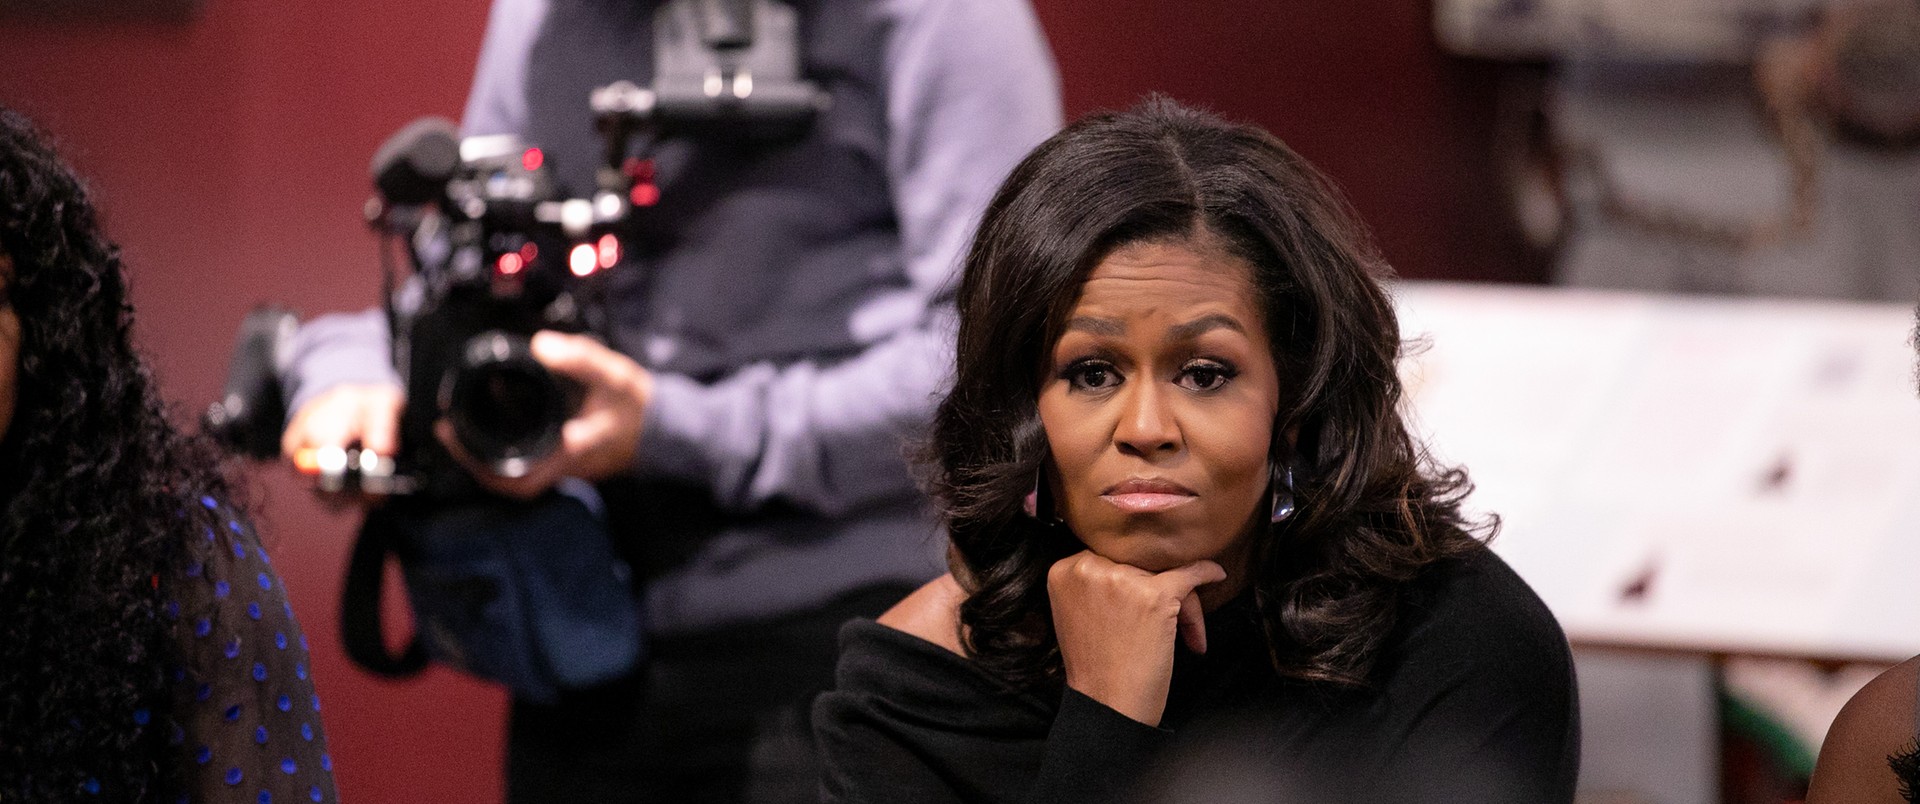 Michelle Obama zasługuje na więcej niż wyreżyserowane show